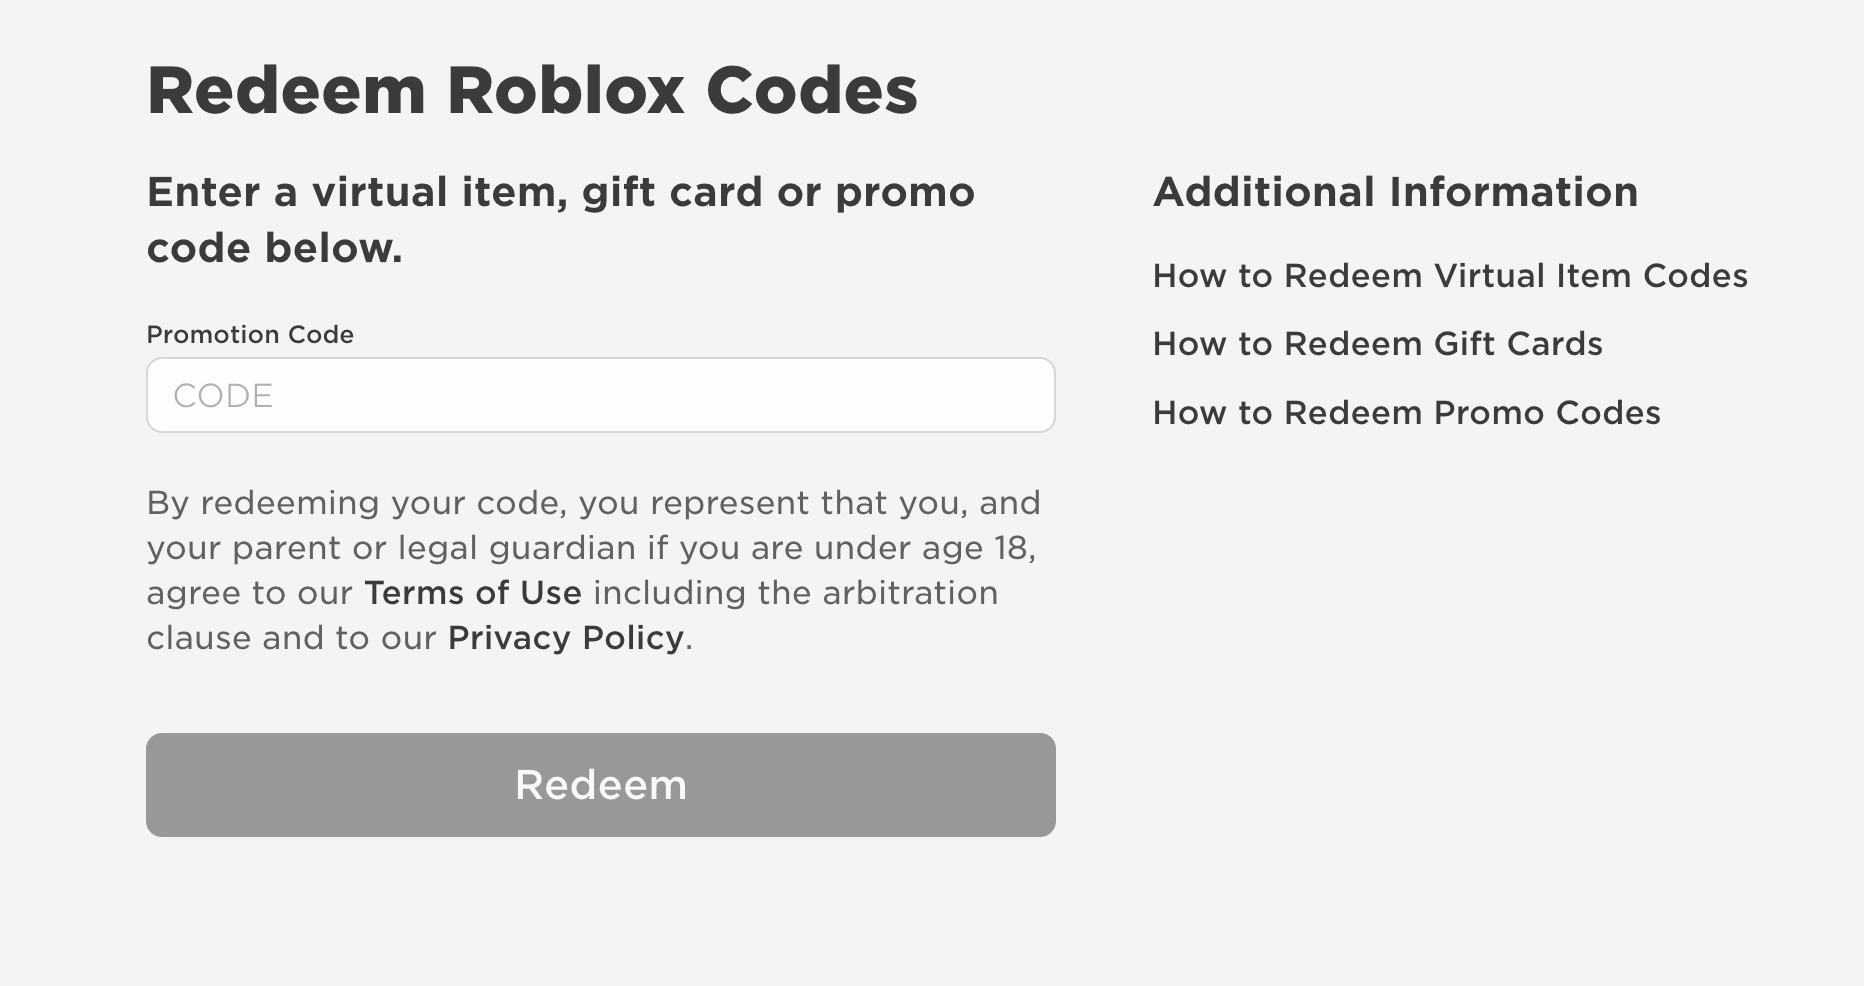 Roblox promocodes. Redeem Roblox codes. Roblox Promo codes redeem. Roblox.com/redeem.